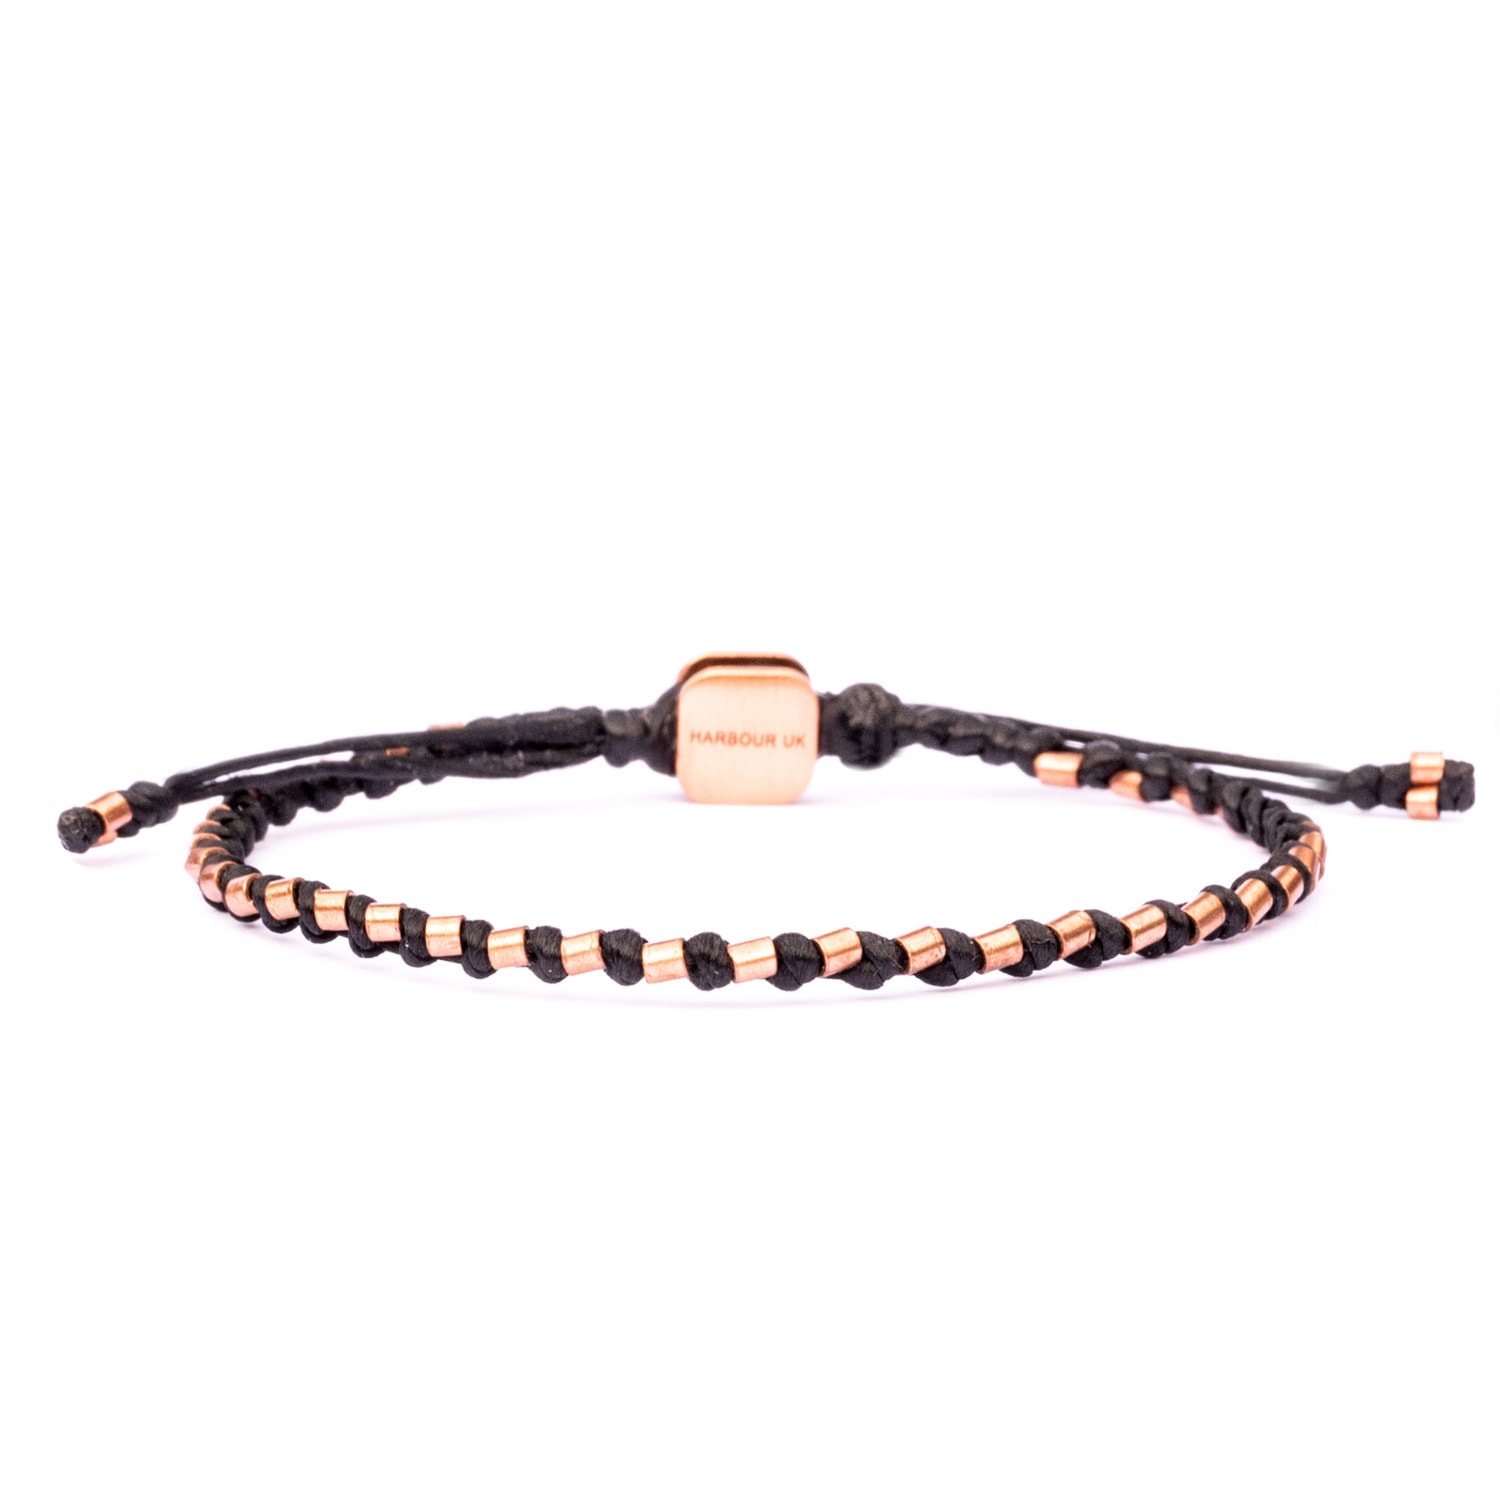 Solid Copper & Black Rope Bracelet For Men - Black Harbour UK Bracelets